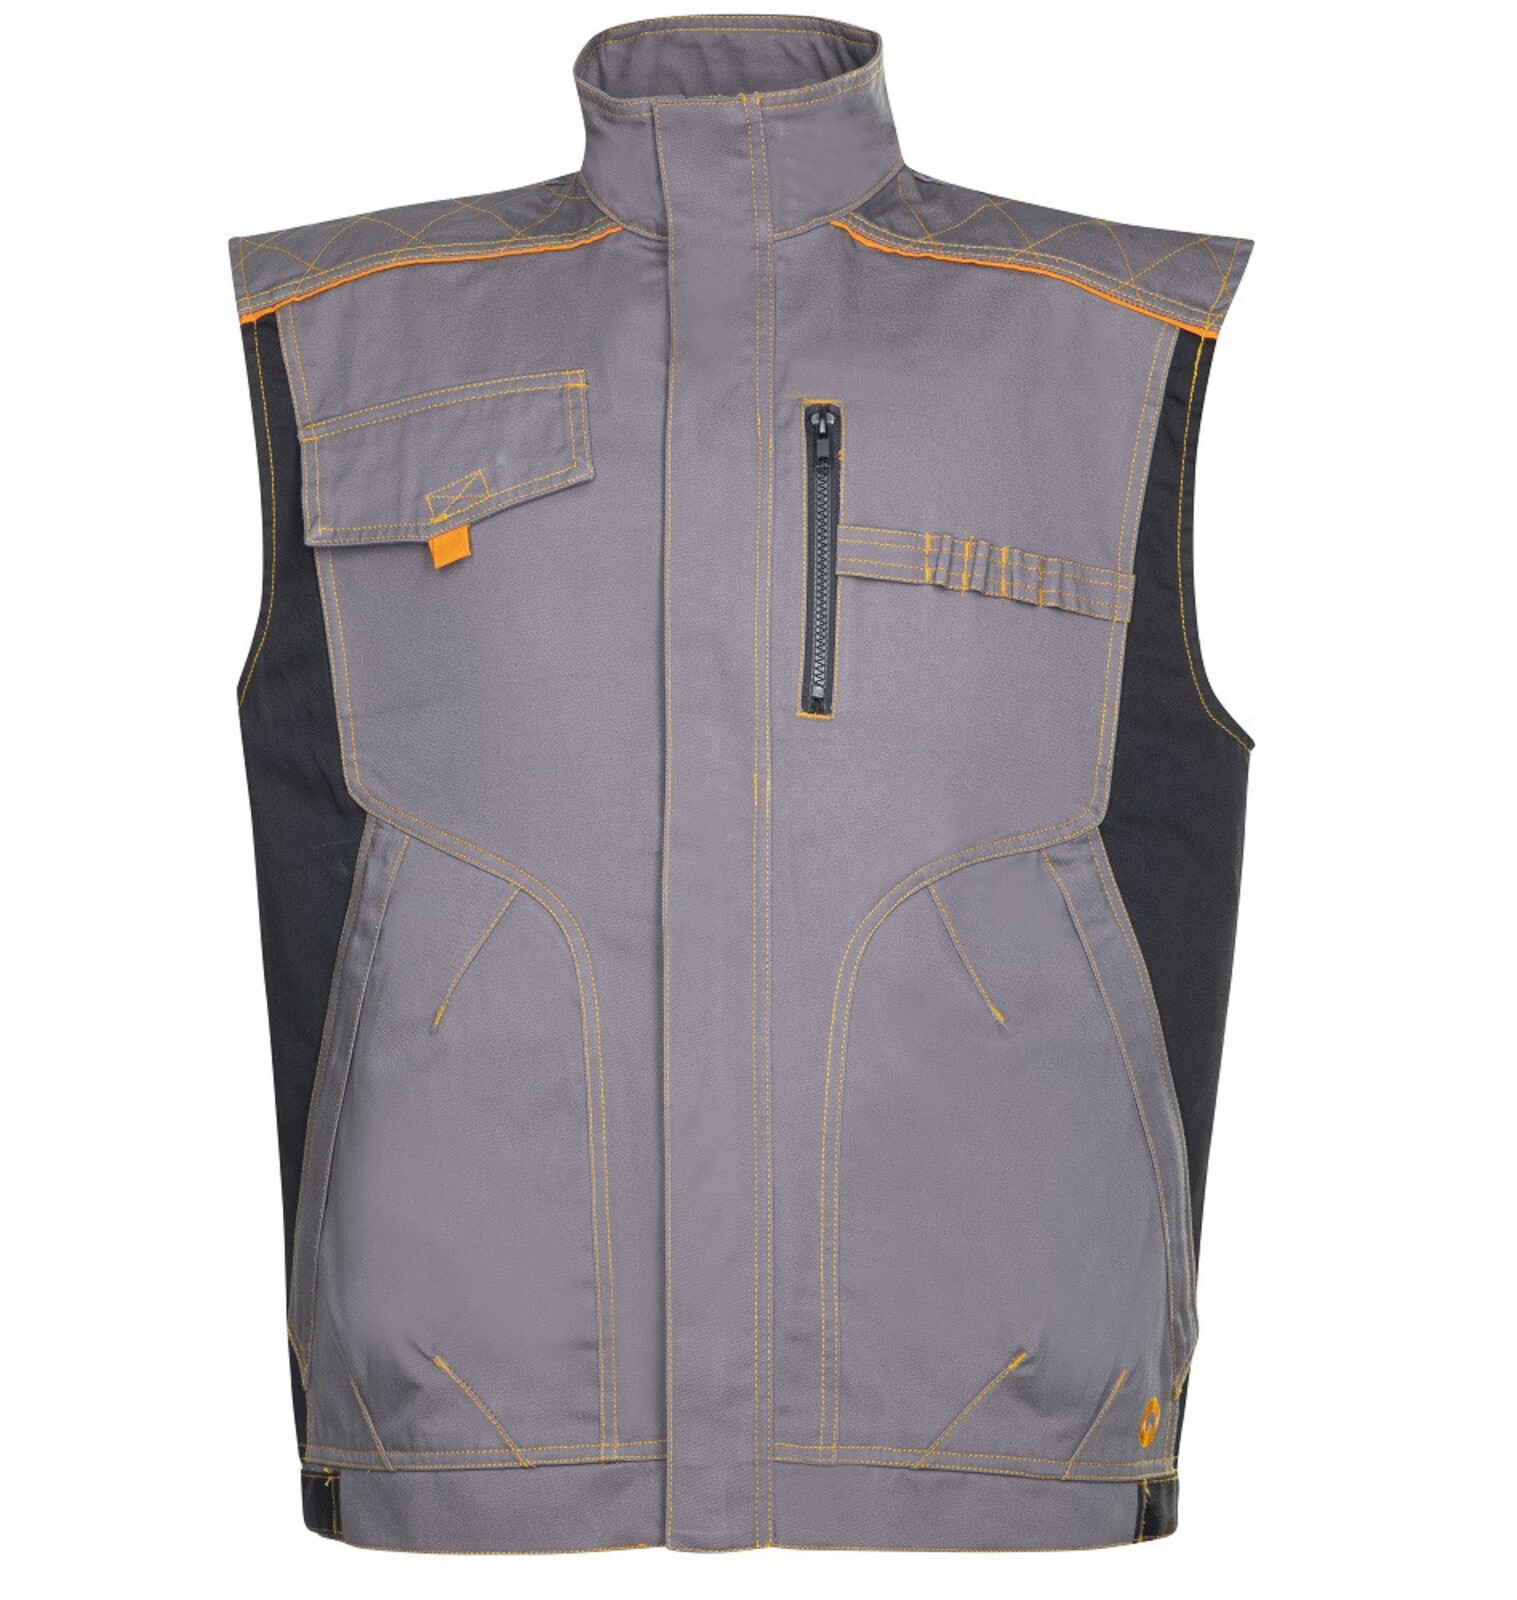 Pánska montérková vesta Ardon Vision - veľkosť: 58, farba: sivá/oranžová